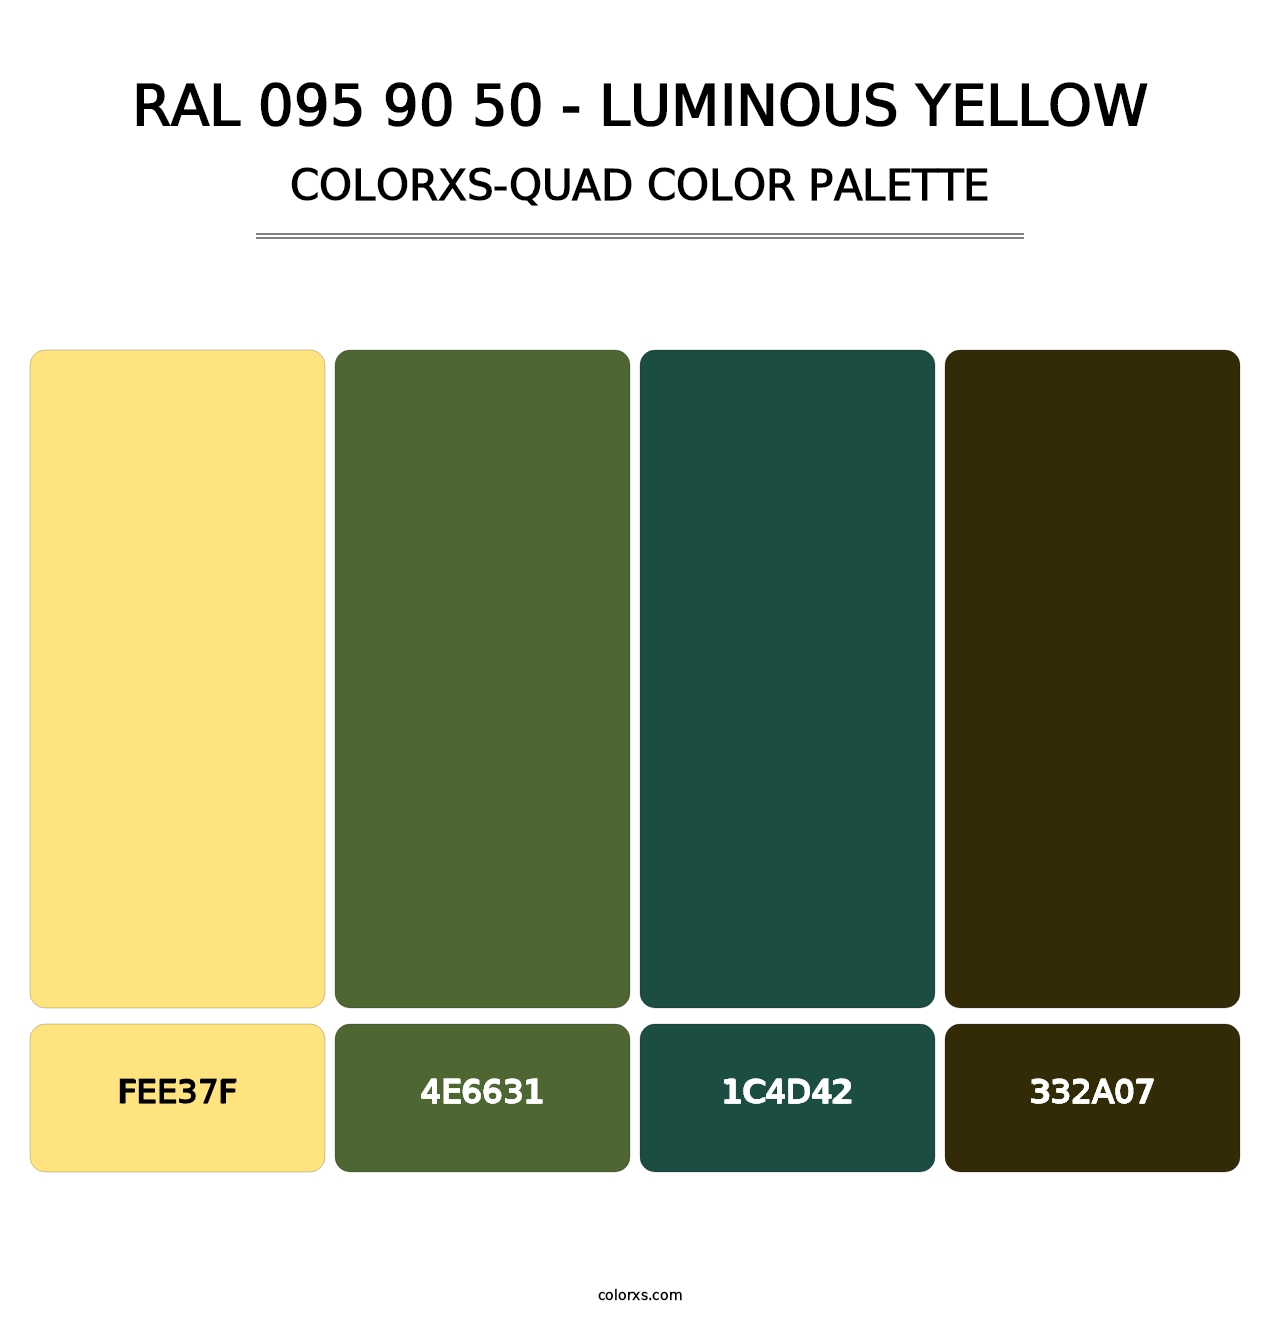 RAL 095 90 50 - Luminous Yellow - Colorxs Quad Palette